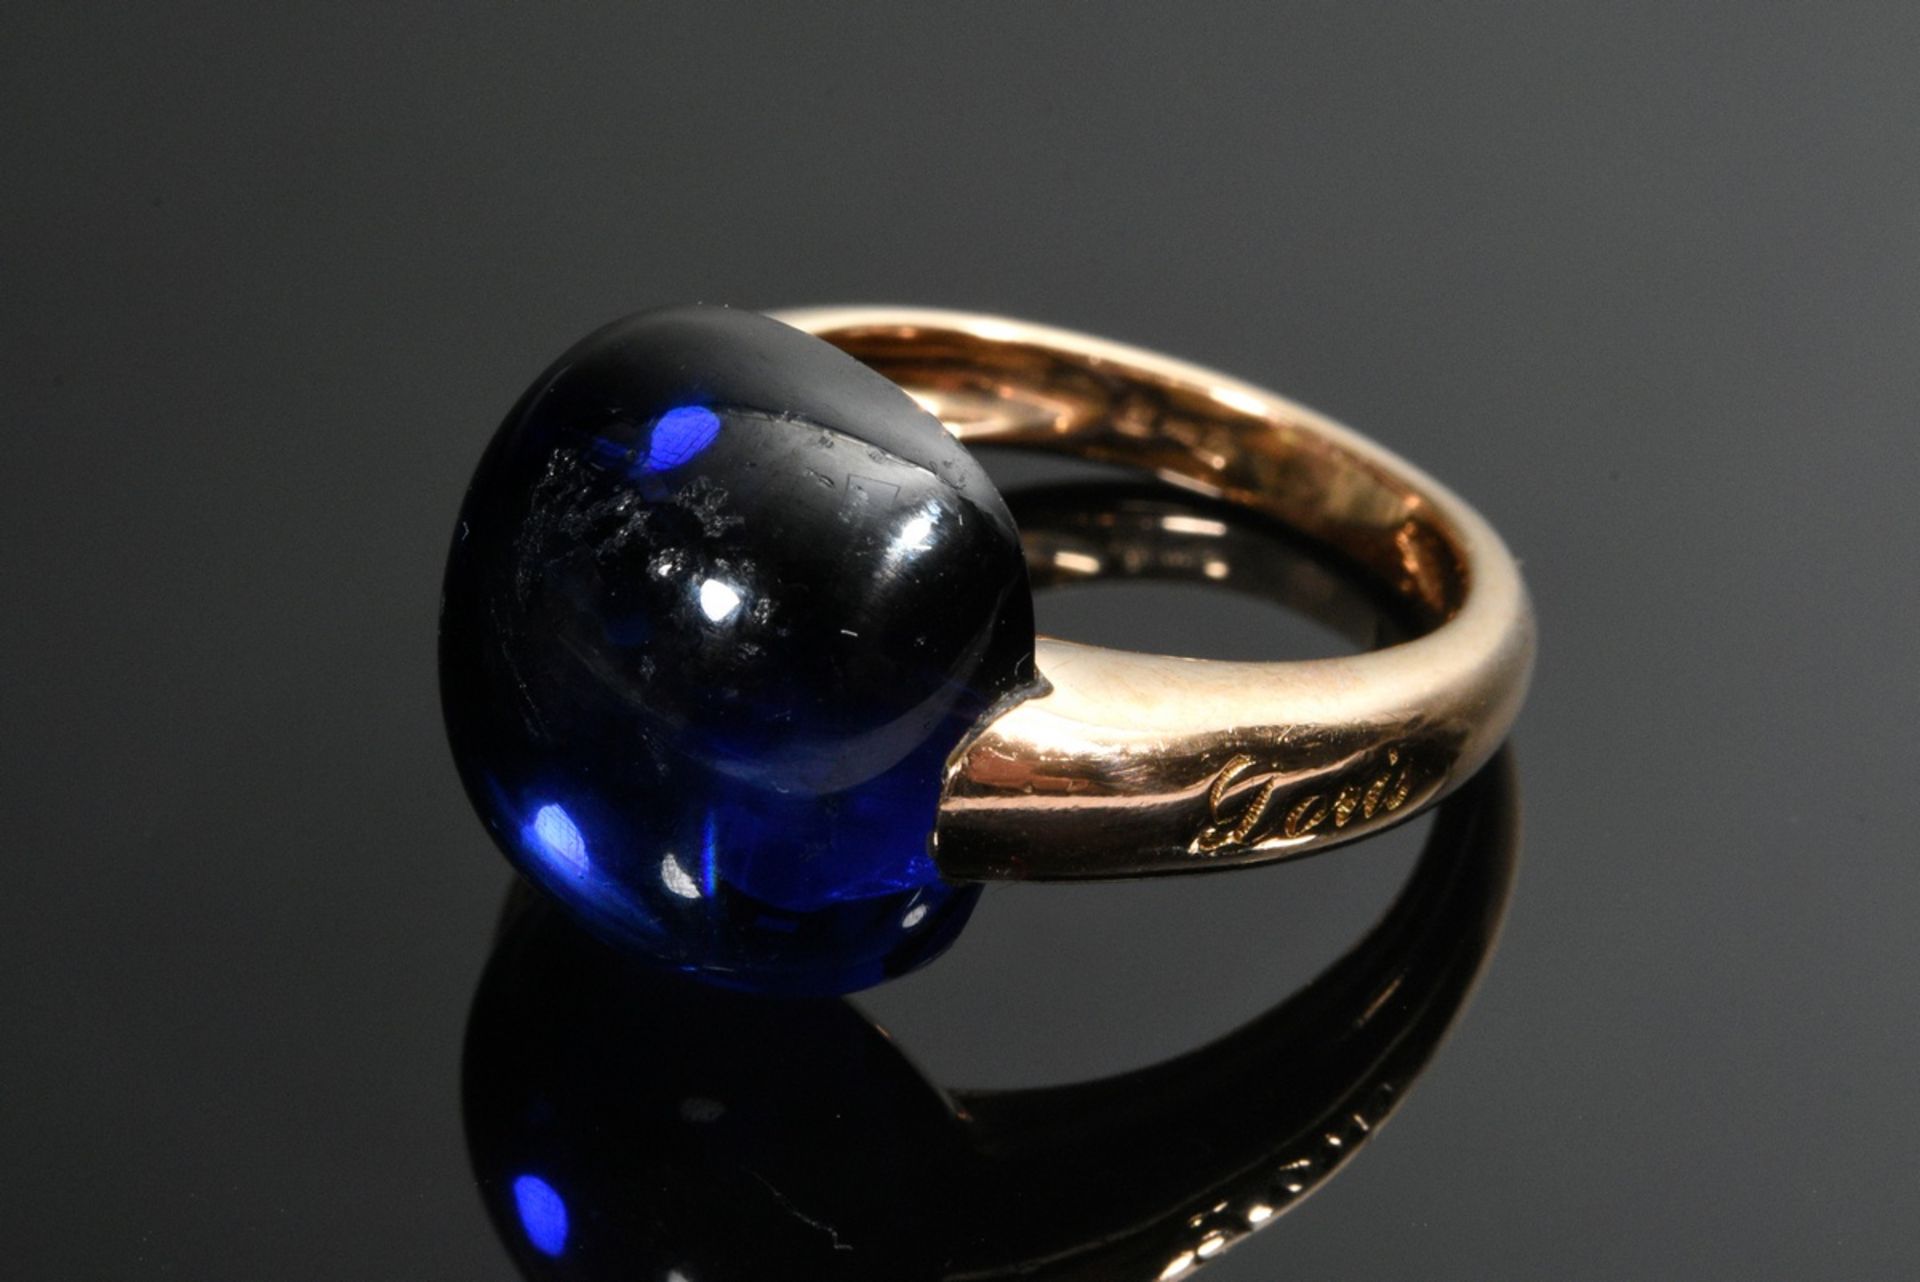 Doris Gioielli Roségold 750 Ring mit synthetischem blauem Spinell Cabochon (13,5x14mm), sign., 9,4g - Bild 2 aus 4